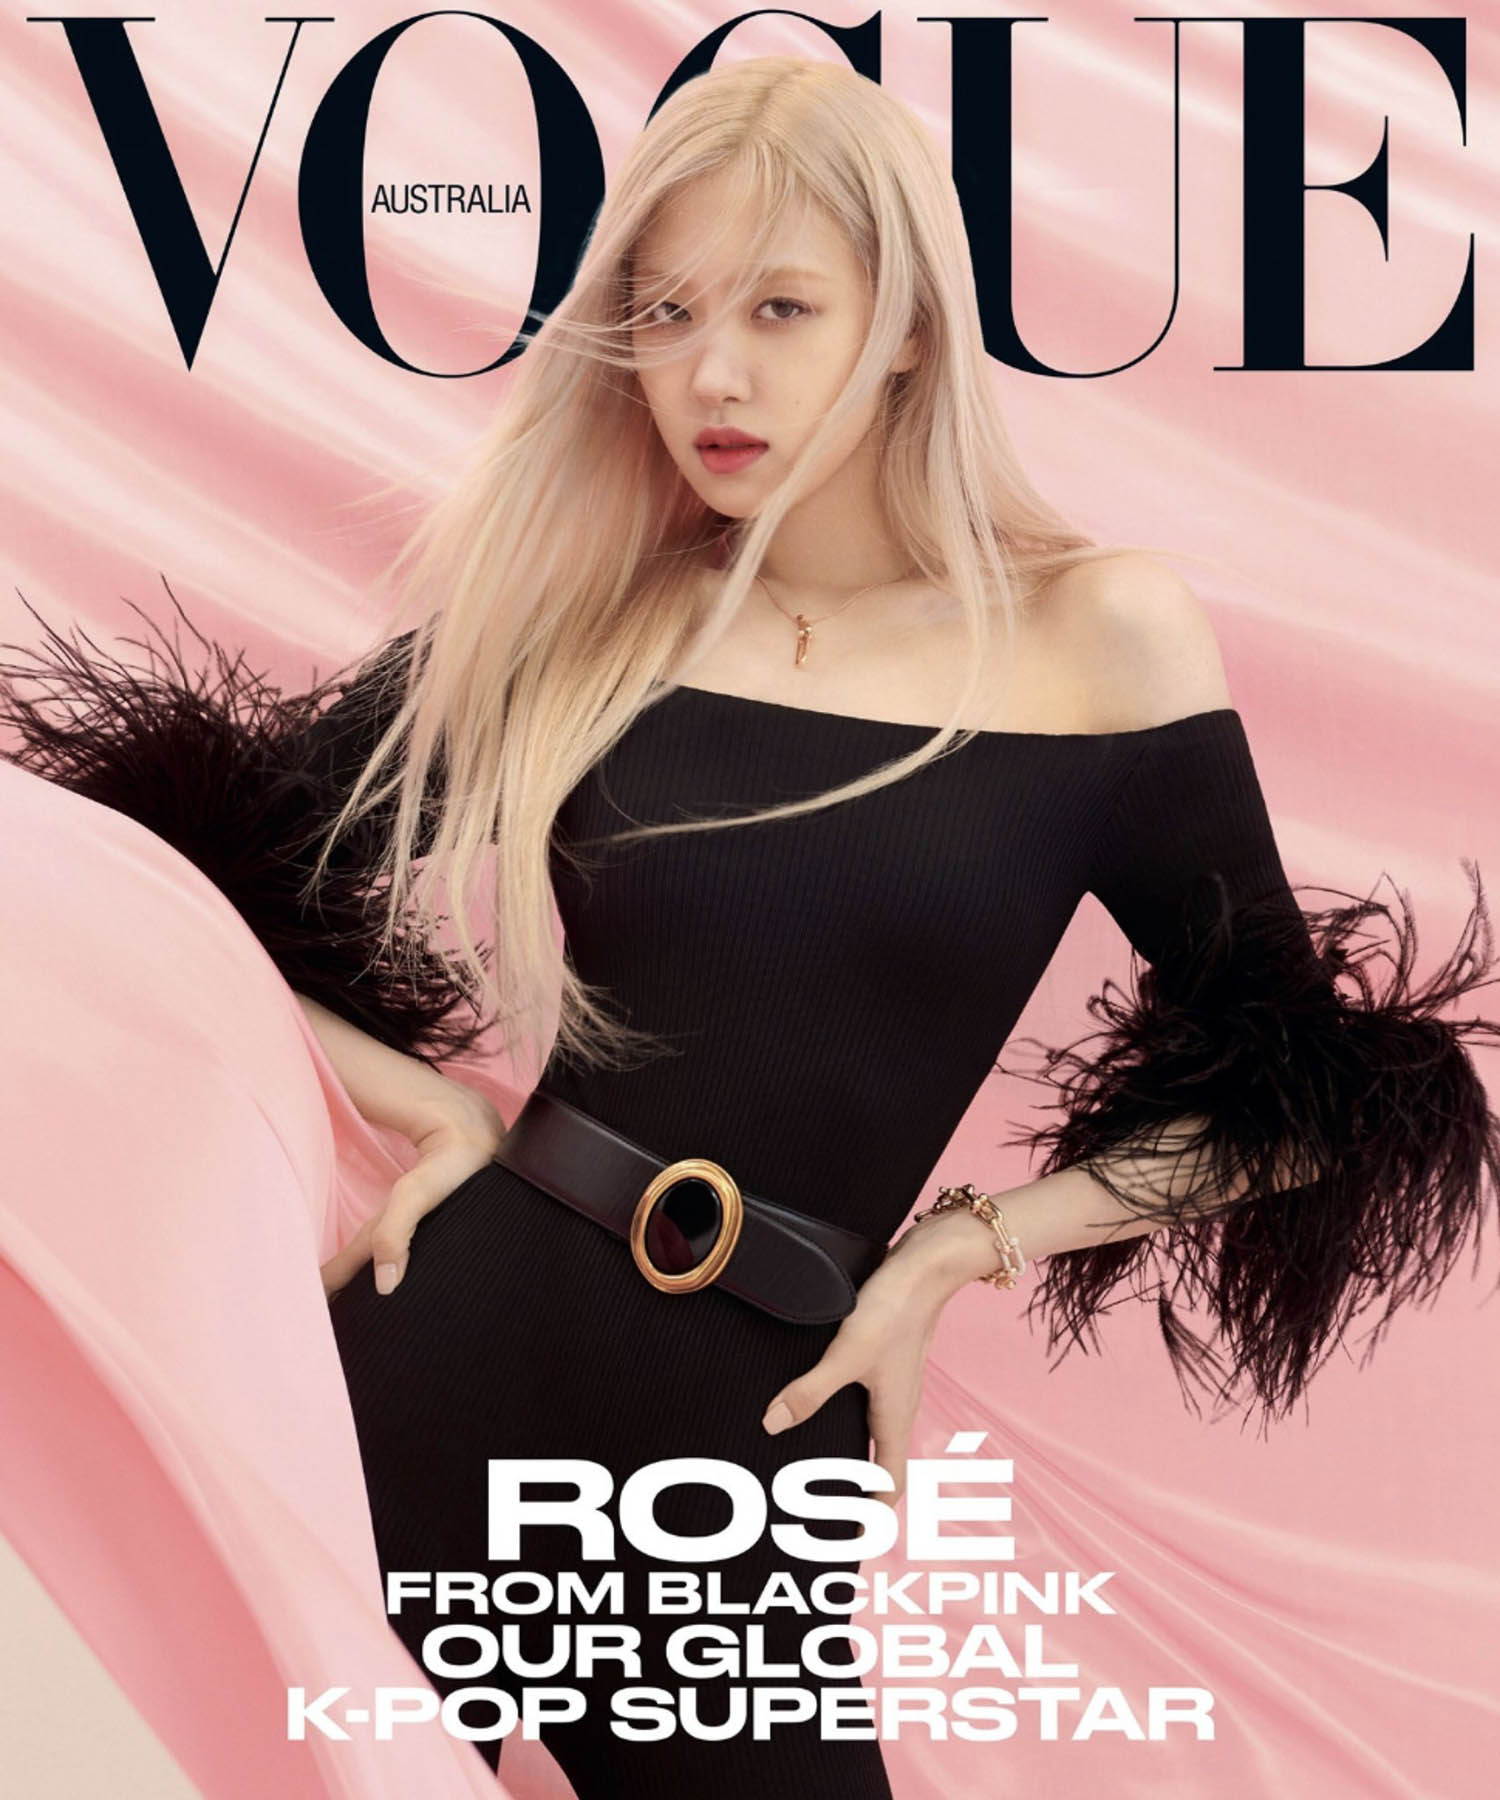 Rosé covers Vogue Australia April 2021 by Peter Ash Lee